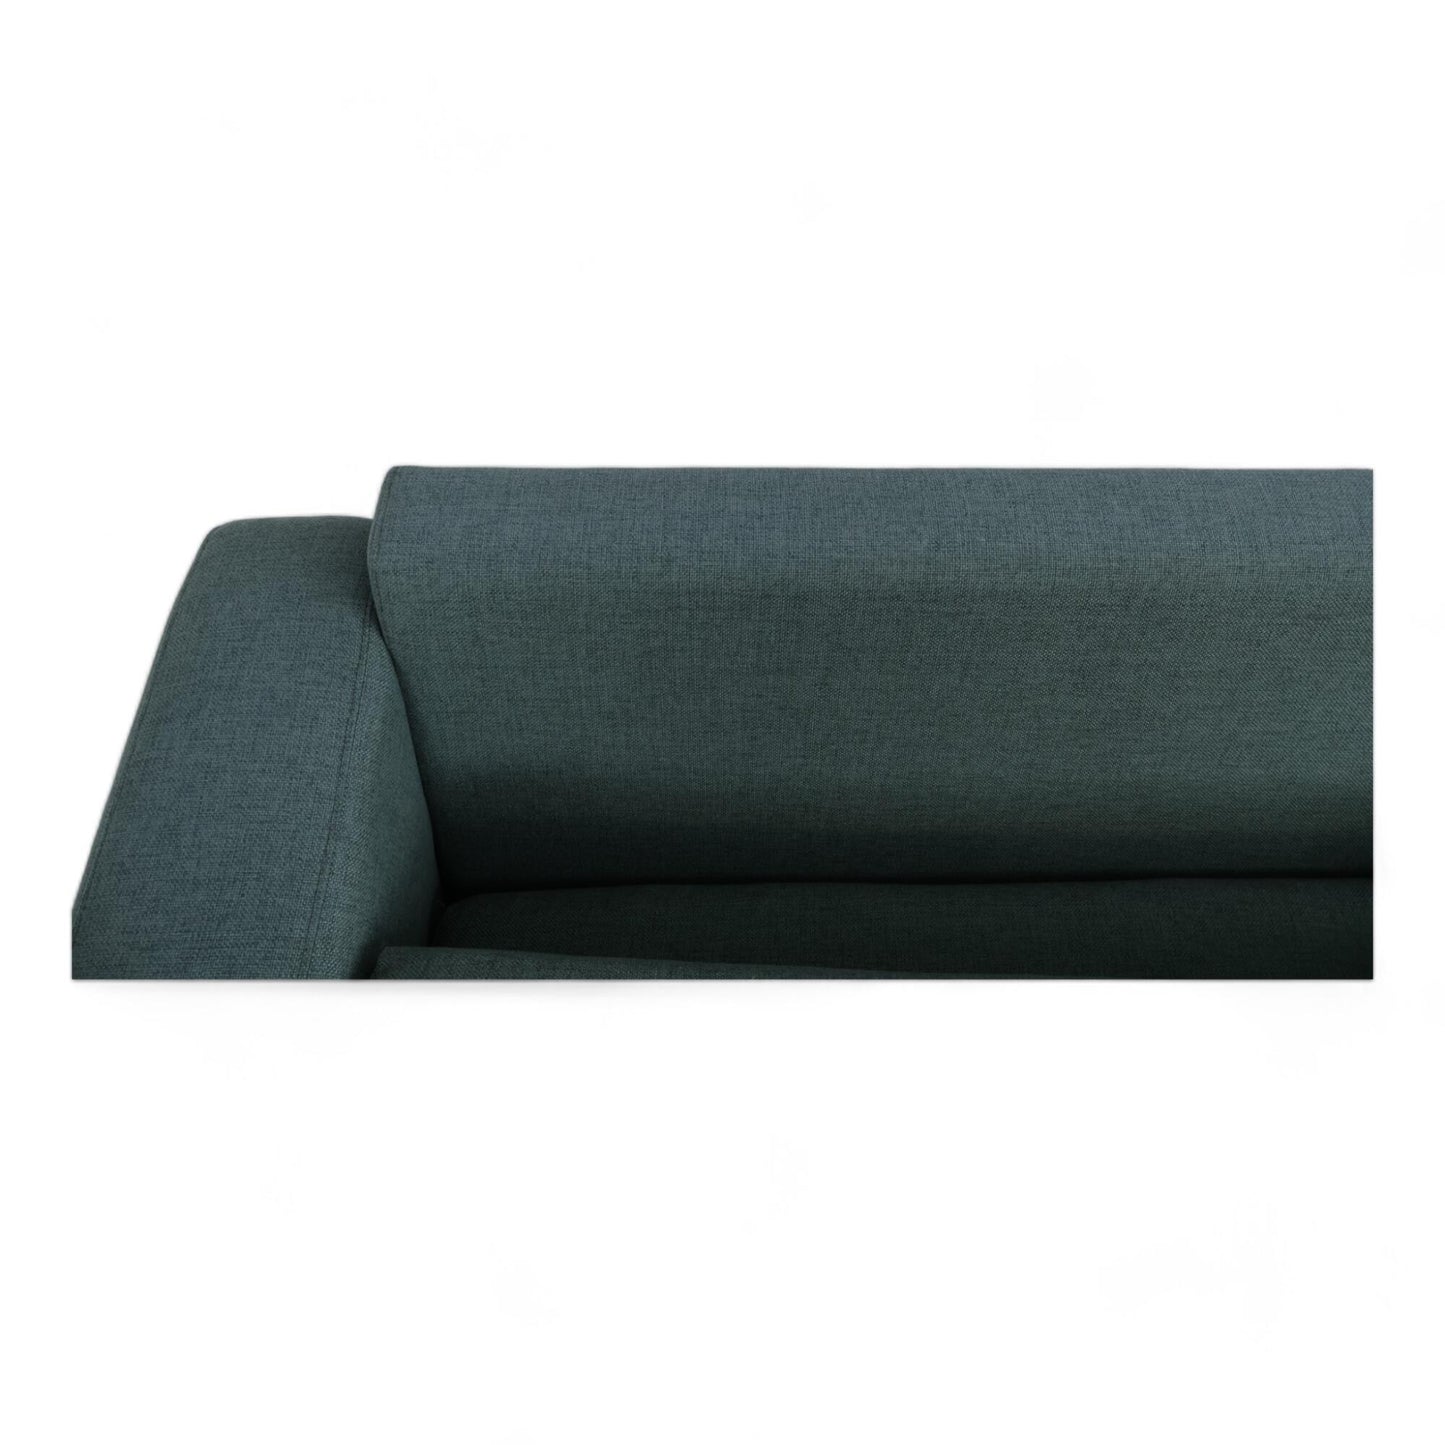 Nyrenset | Sjøgrønn Bolia Scandinavia 3-seter sofa med puff